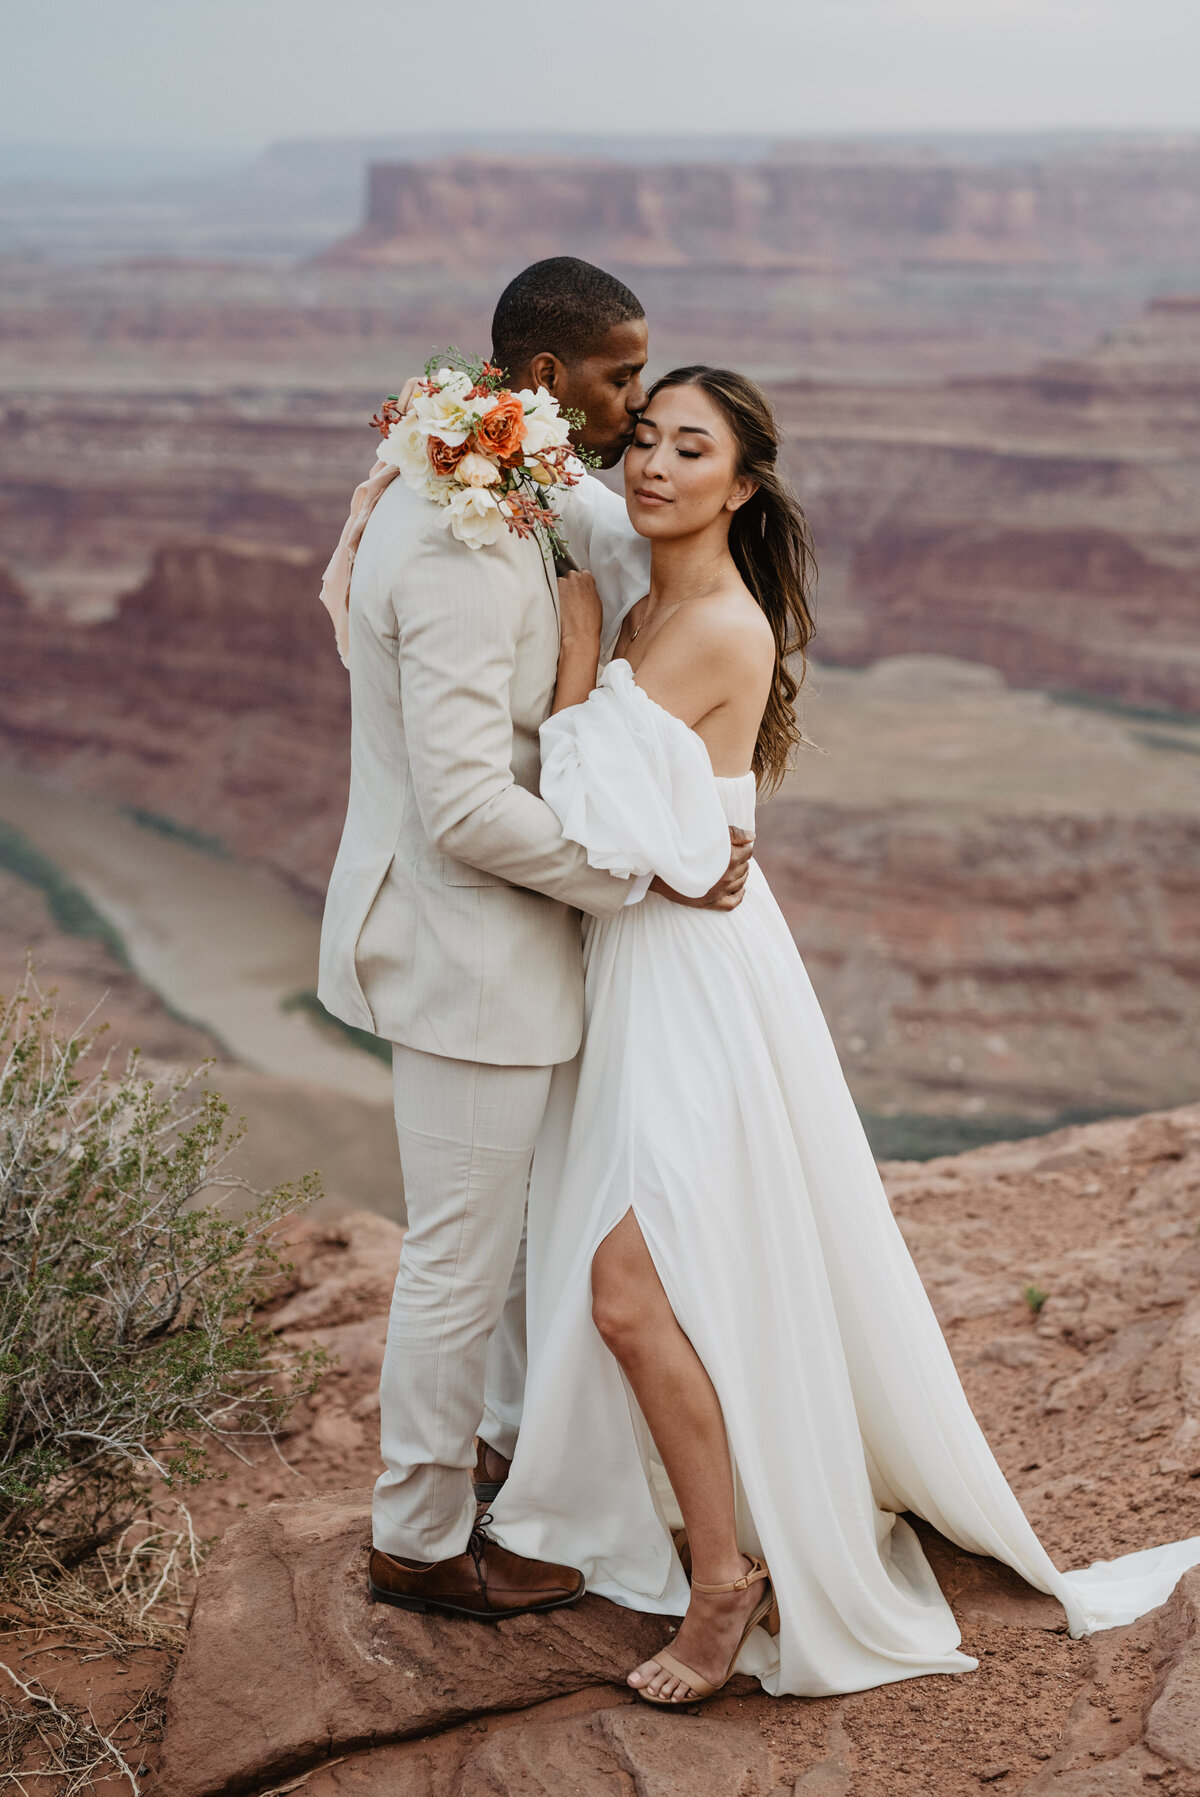 Utah Elopement Photographer captures groom kissing bride's cheek